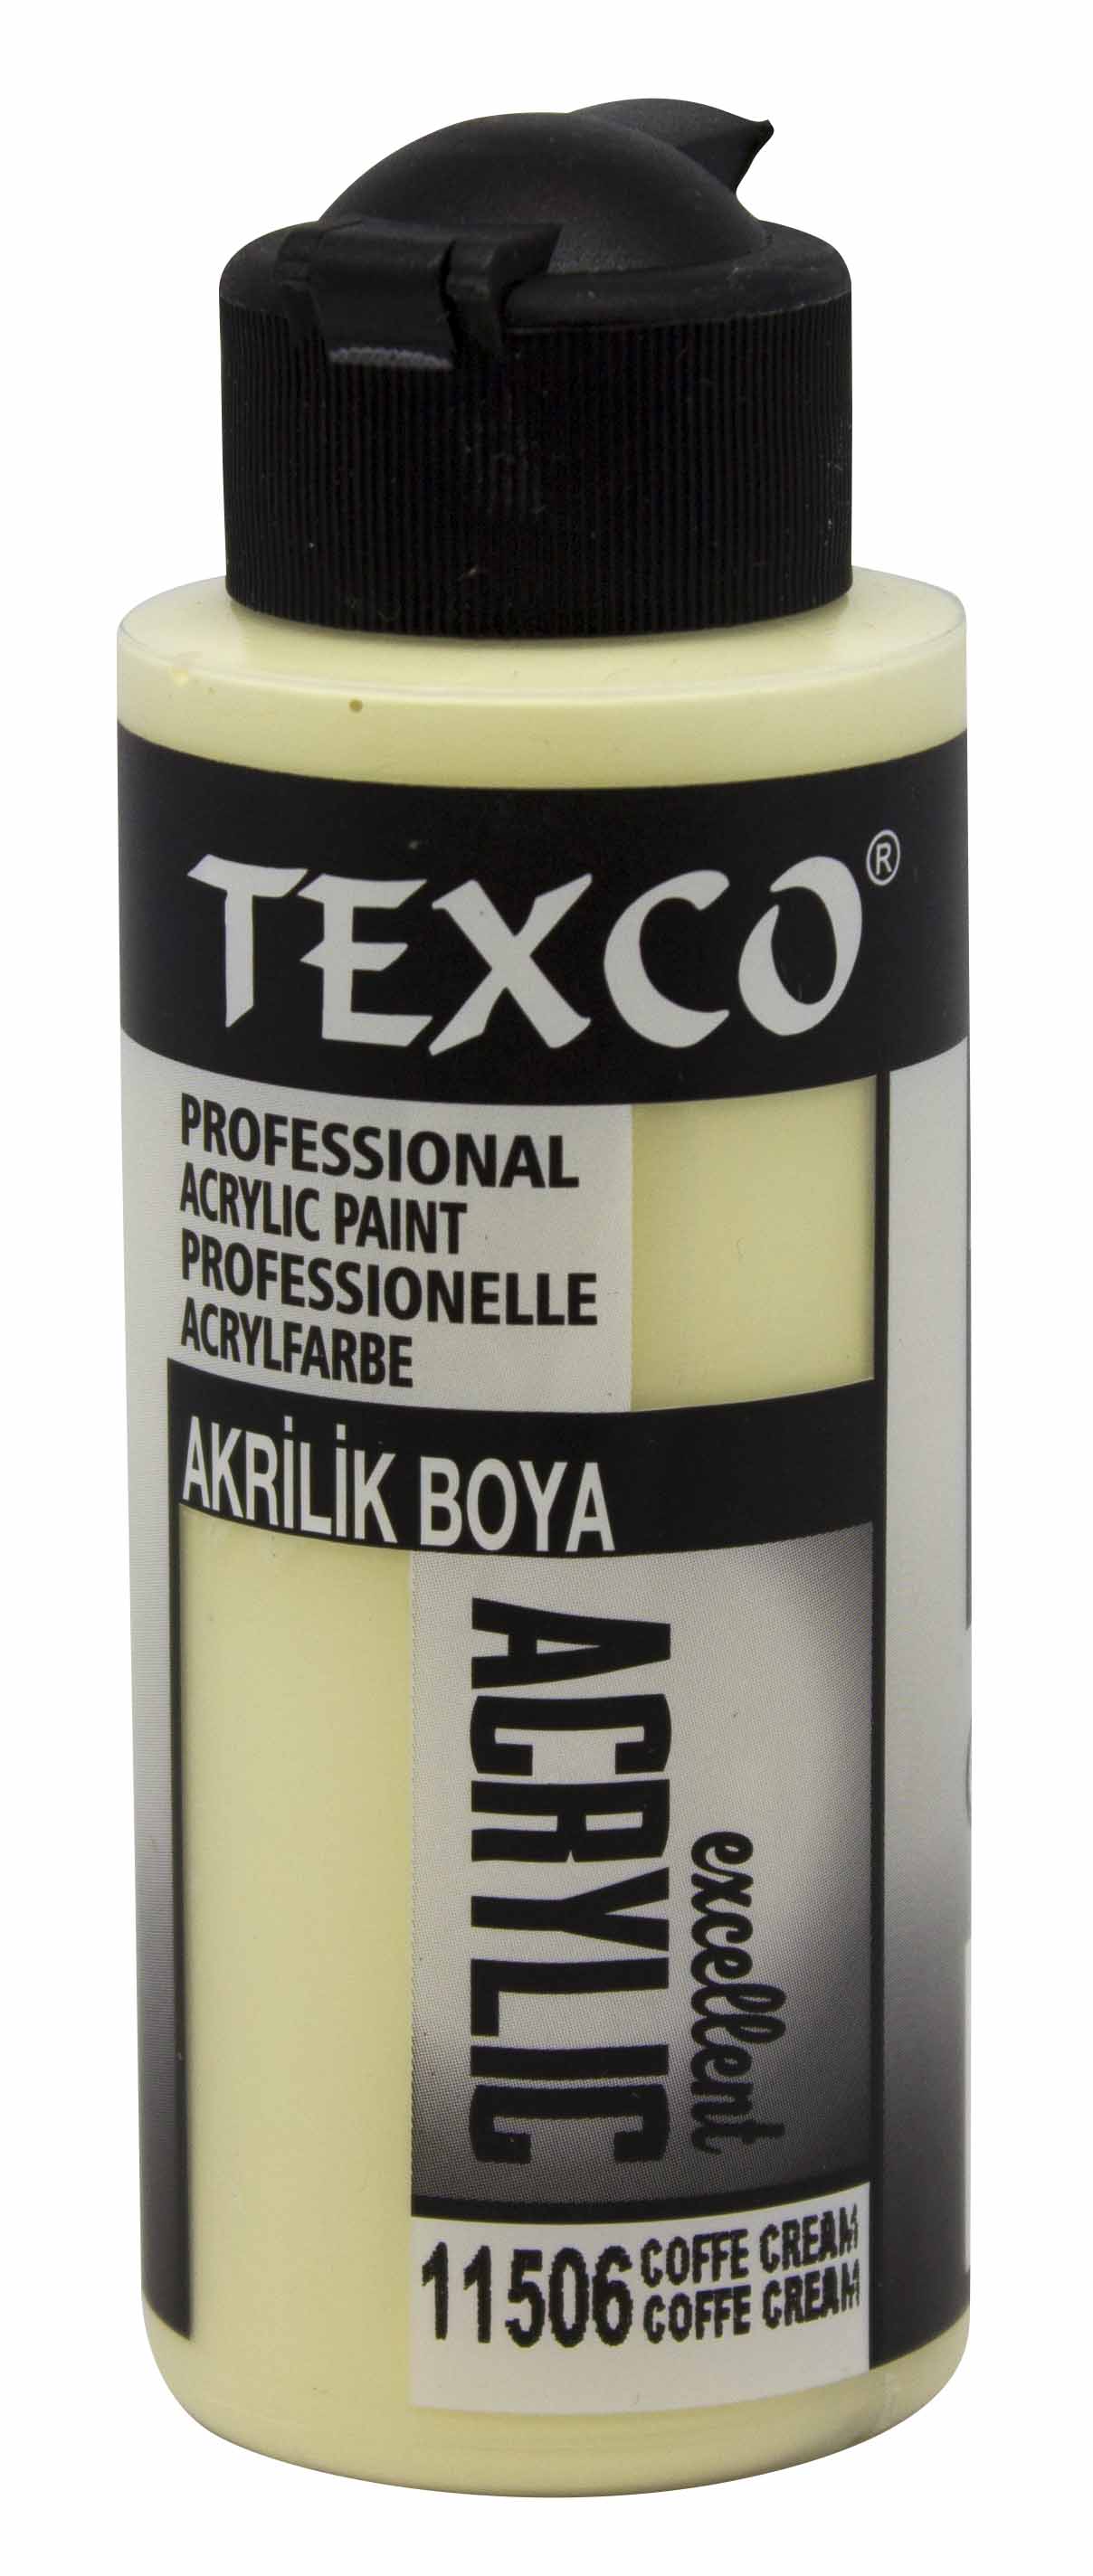 Texco Excellent Akrilik Boya 11506-Coffe Krem 110 cc